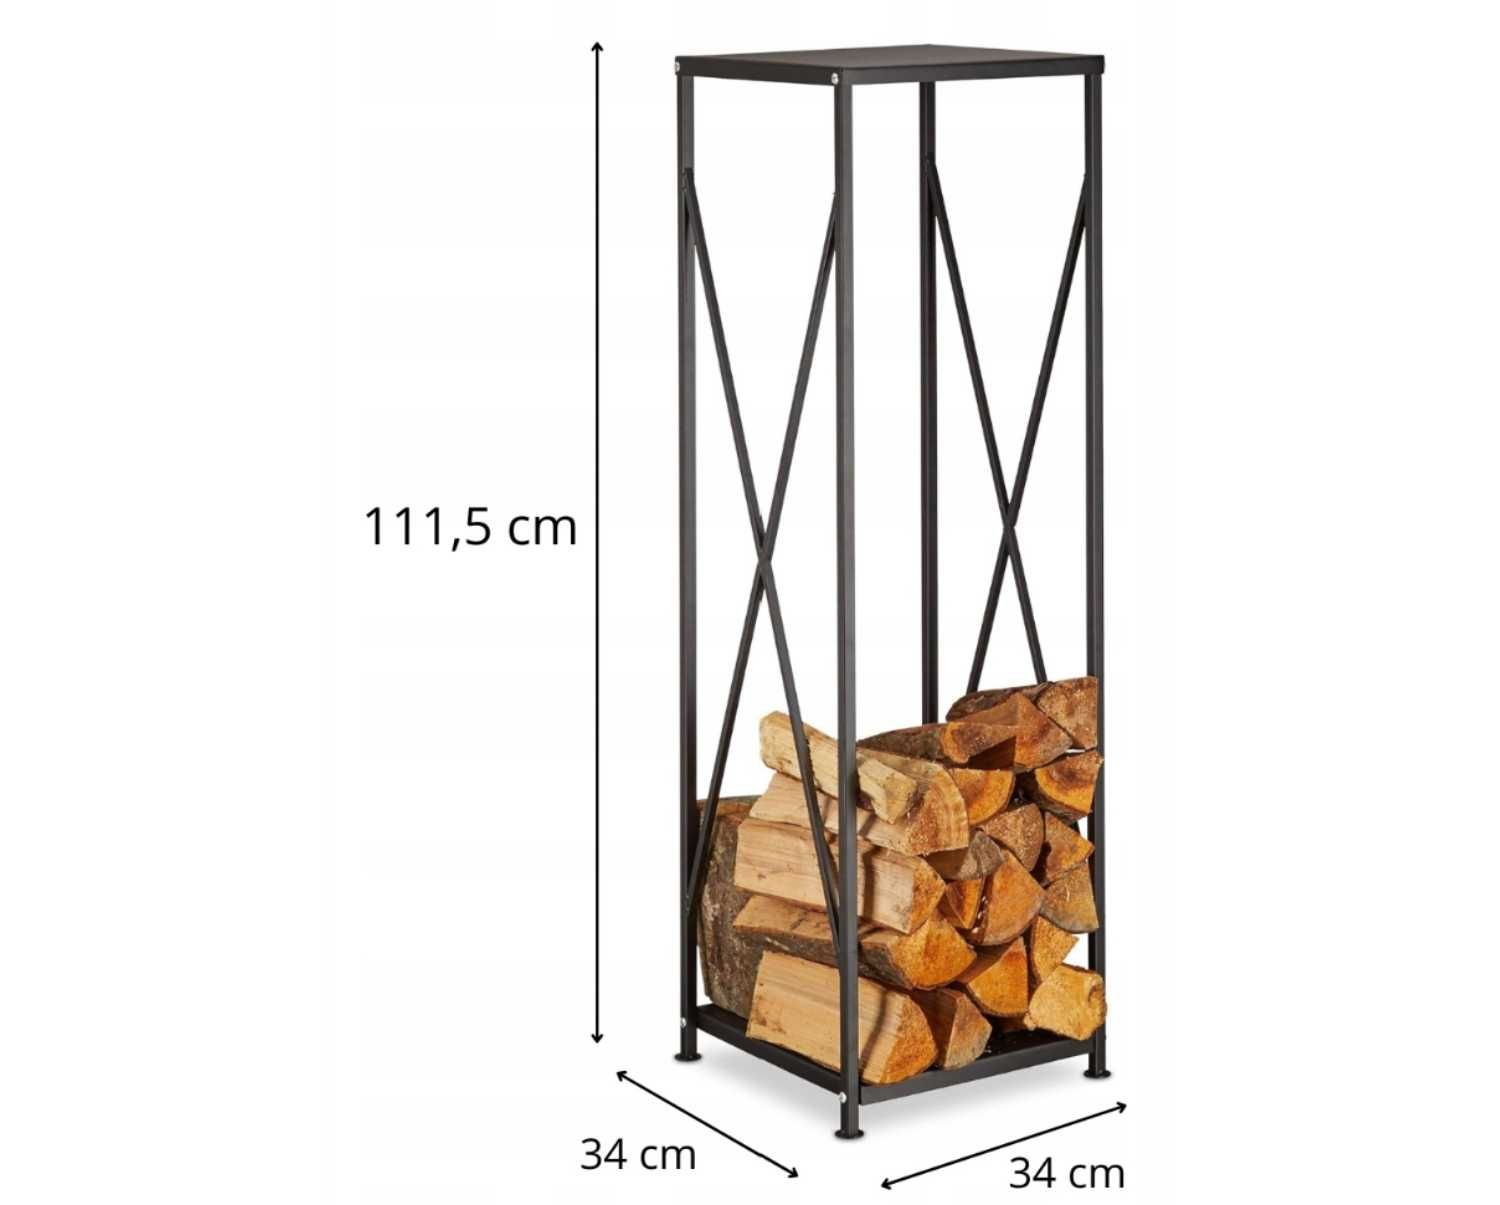 Wysoki Stojak Kosz Regał Na Drewno Kominkowe Metalowy 111x34 cm